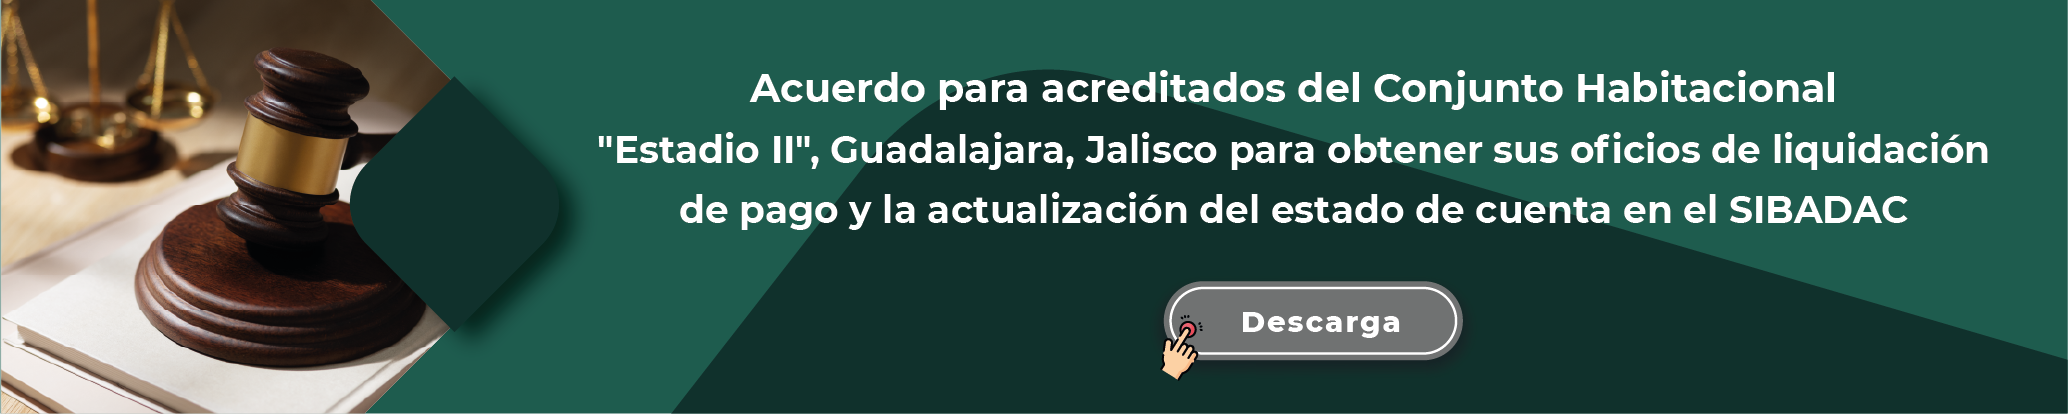 Acuerdo para acreditados del Conjunto Habitacional Estadio II, Guadalajara, Jalisco para obtener sus oficios de liquidación de pago y la actualización del estado de cuenta en el SIBADAC, descarga